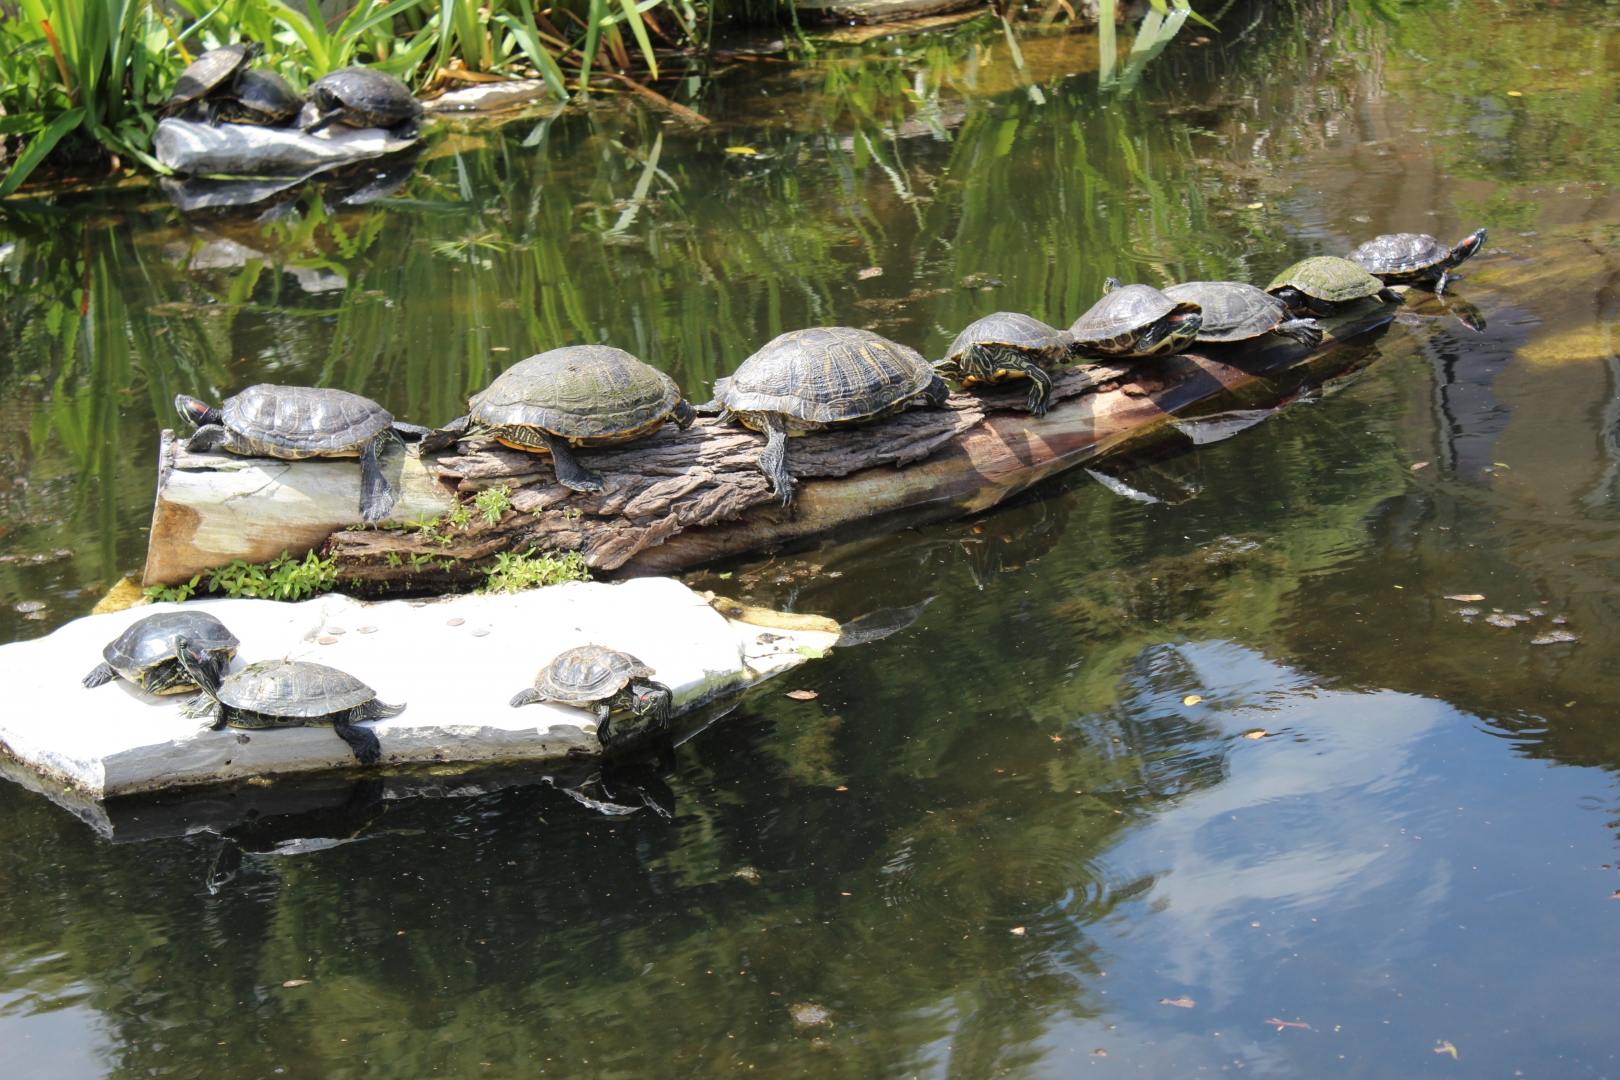 Turtles on a Log